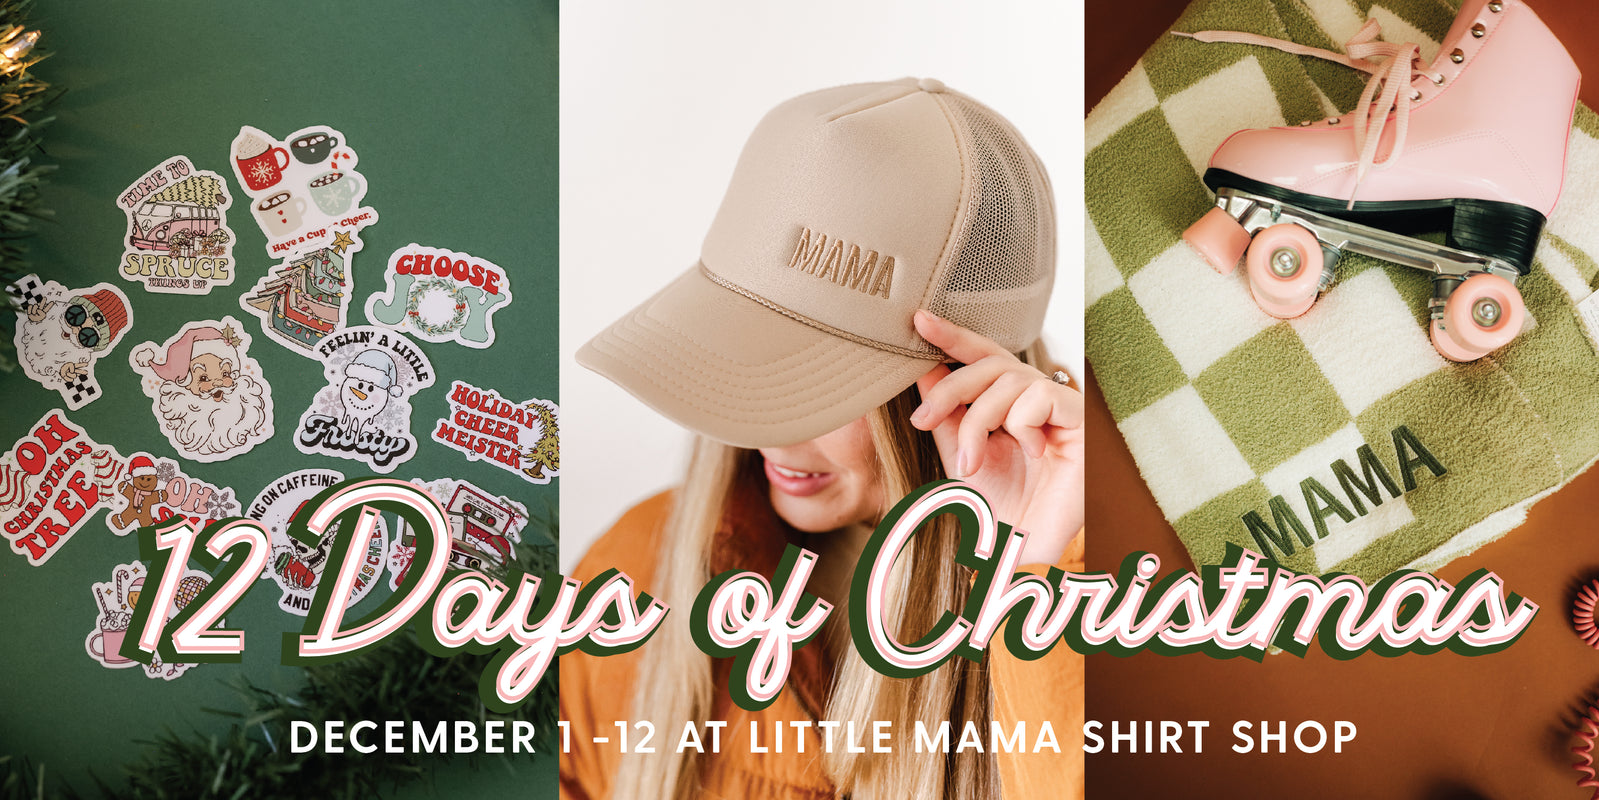 Little Mama Shirt Shop – Little Mama Shirt Shop LLC